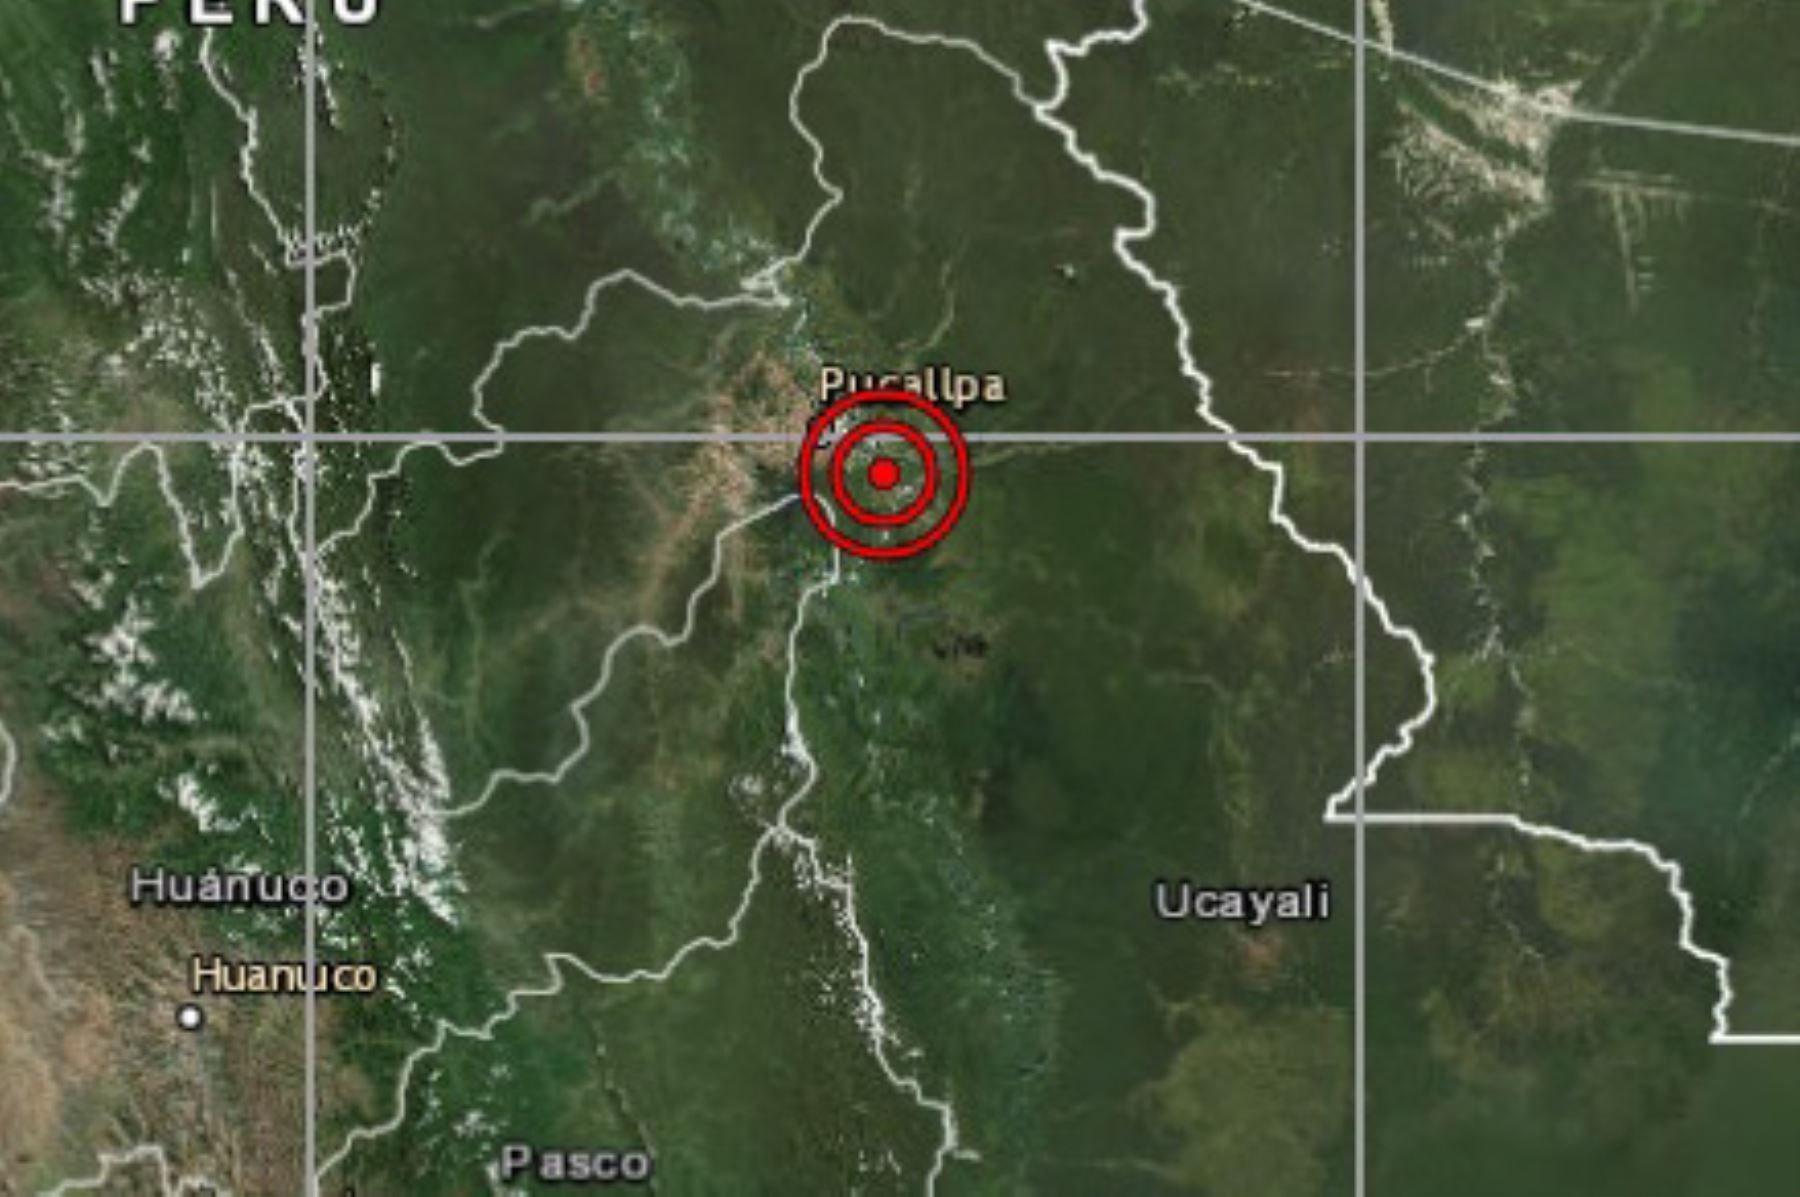 El IGP reportó un movimiento sísmico de magnitud 5.1 en la región Ucayali, en la selva central del país. Foto: INTERNET/Medios